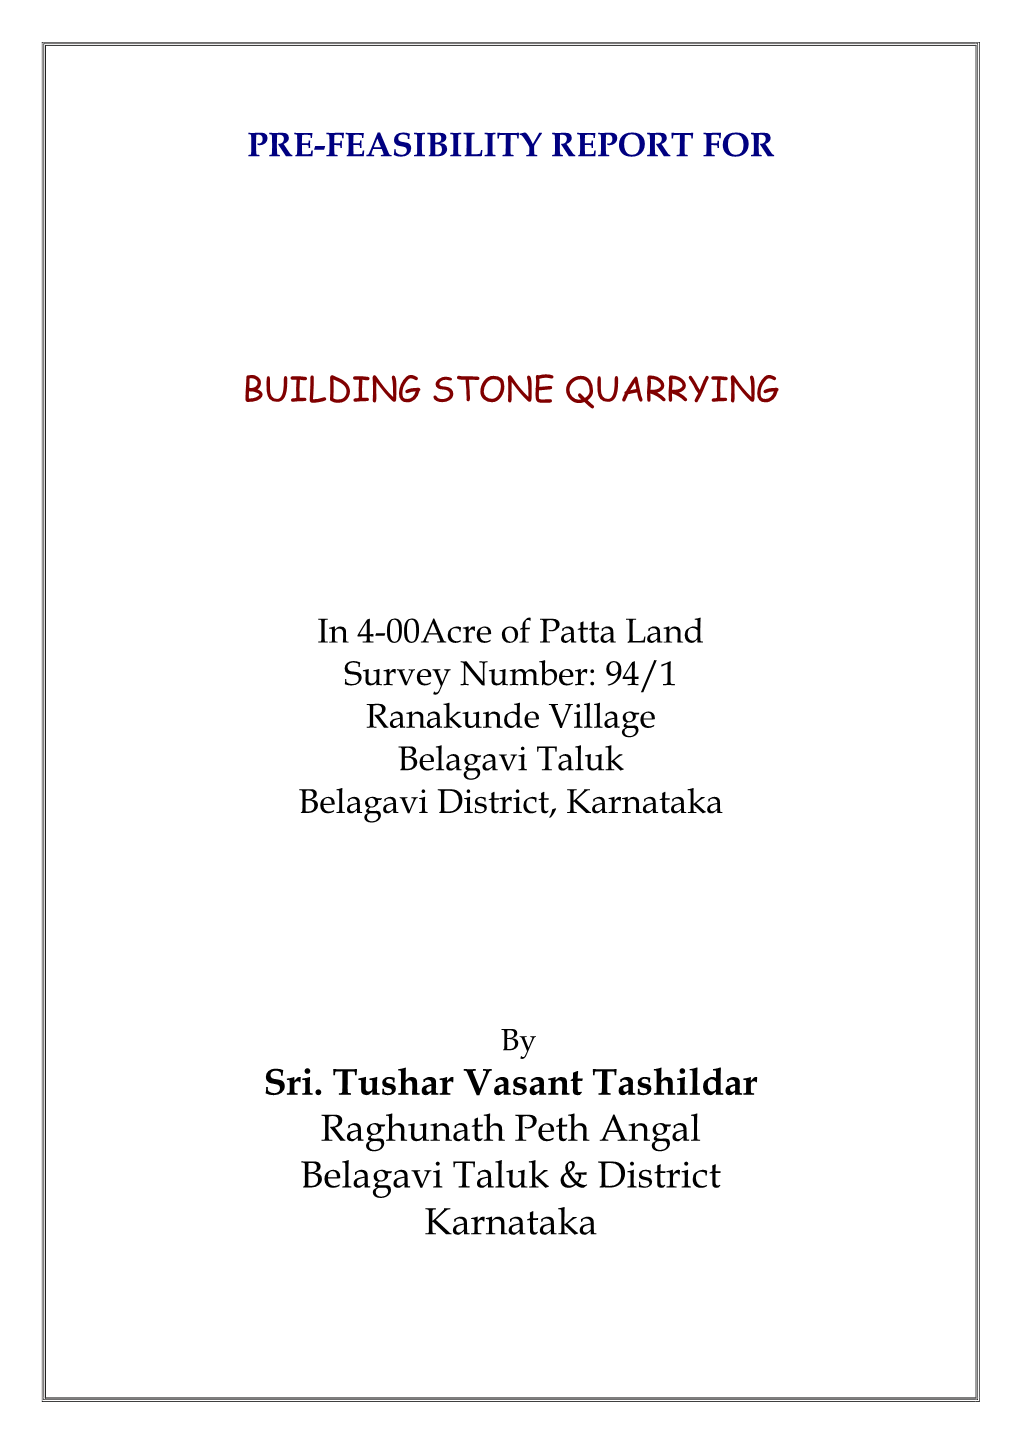 Sri. Tushar Vasant Tashildar Raghunath Peth Angal Belagavi Taluk & District Karnataka